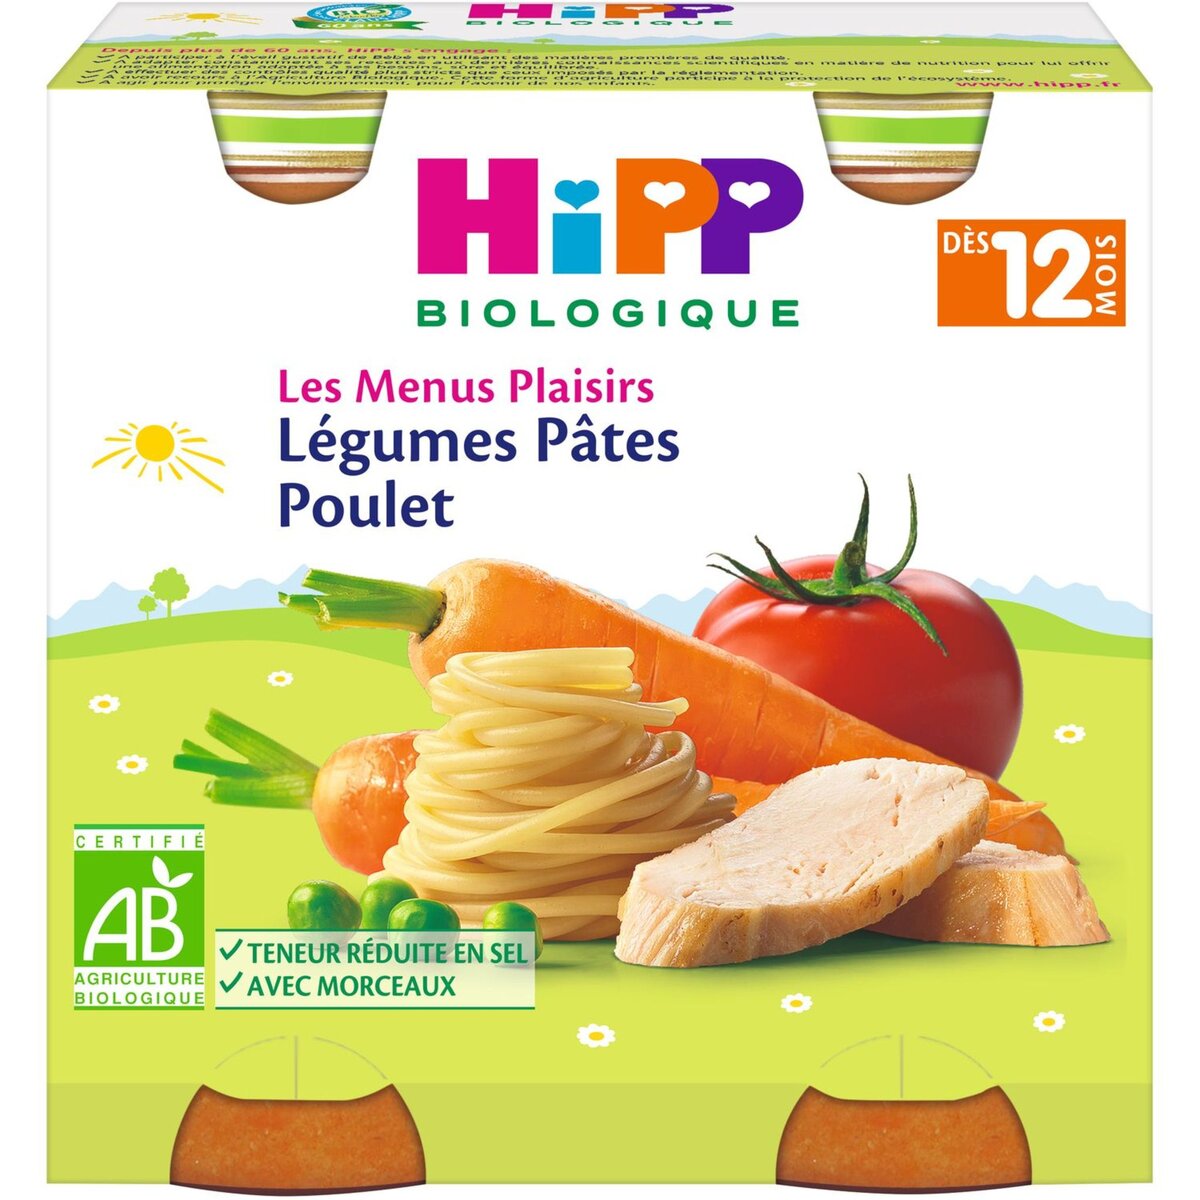 HIPP Hipp bio légumes pates et poulet 2x250g dès 12 mois